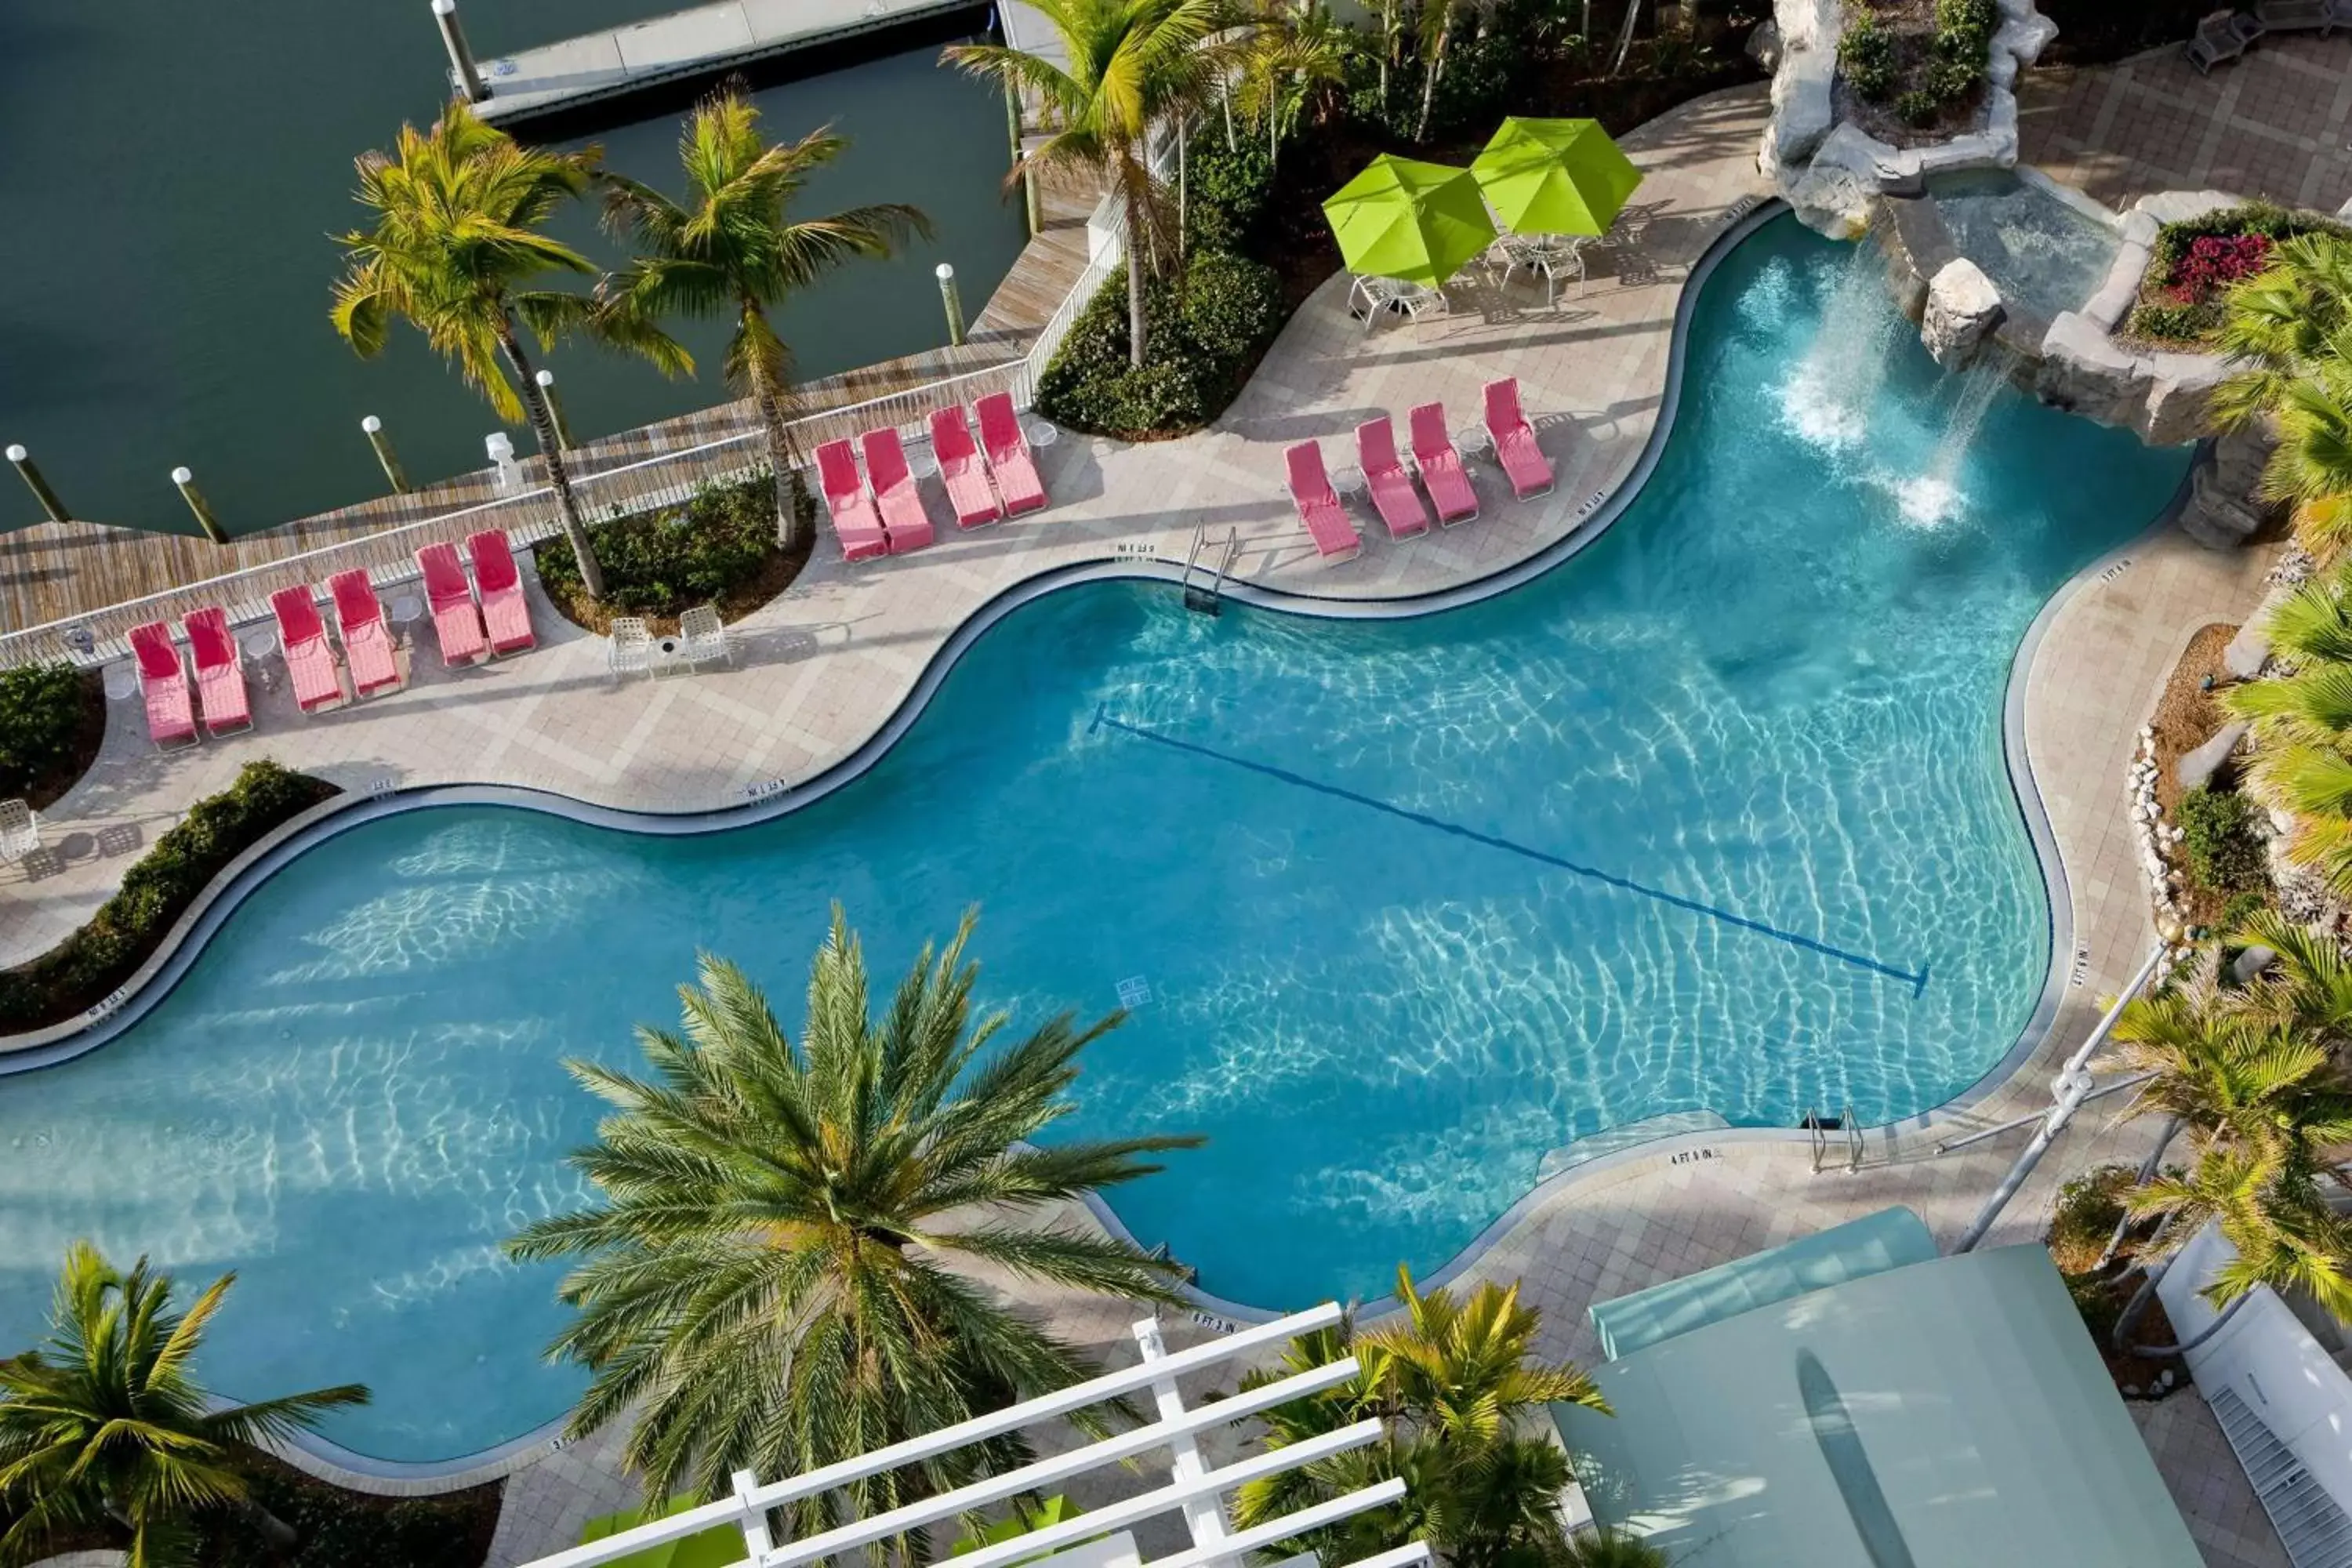 On site, Pool View in Hyatt Regency Sarasota